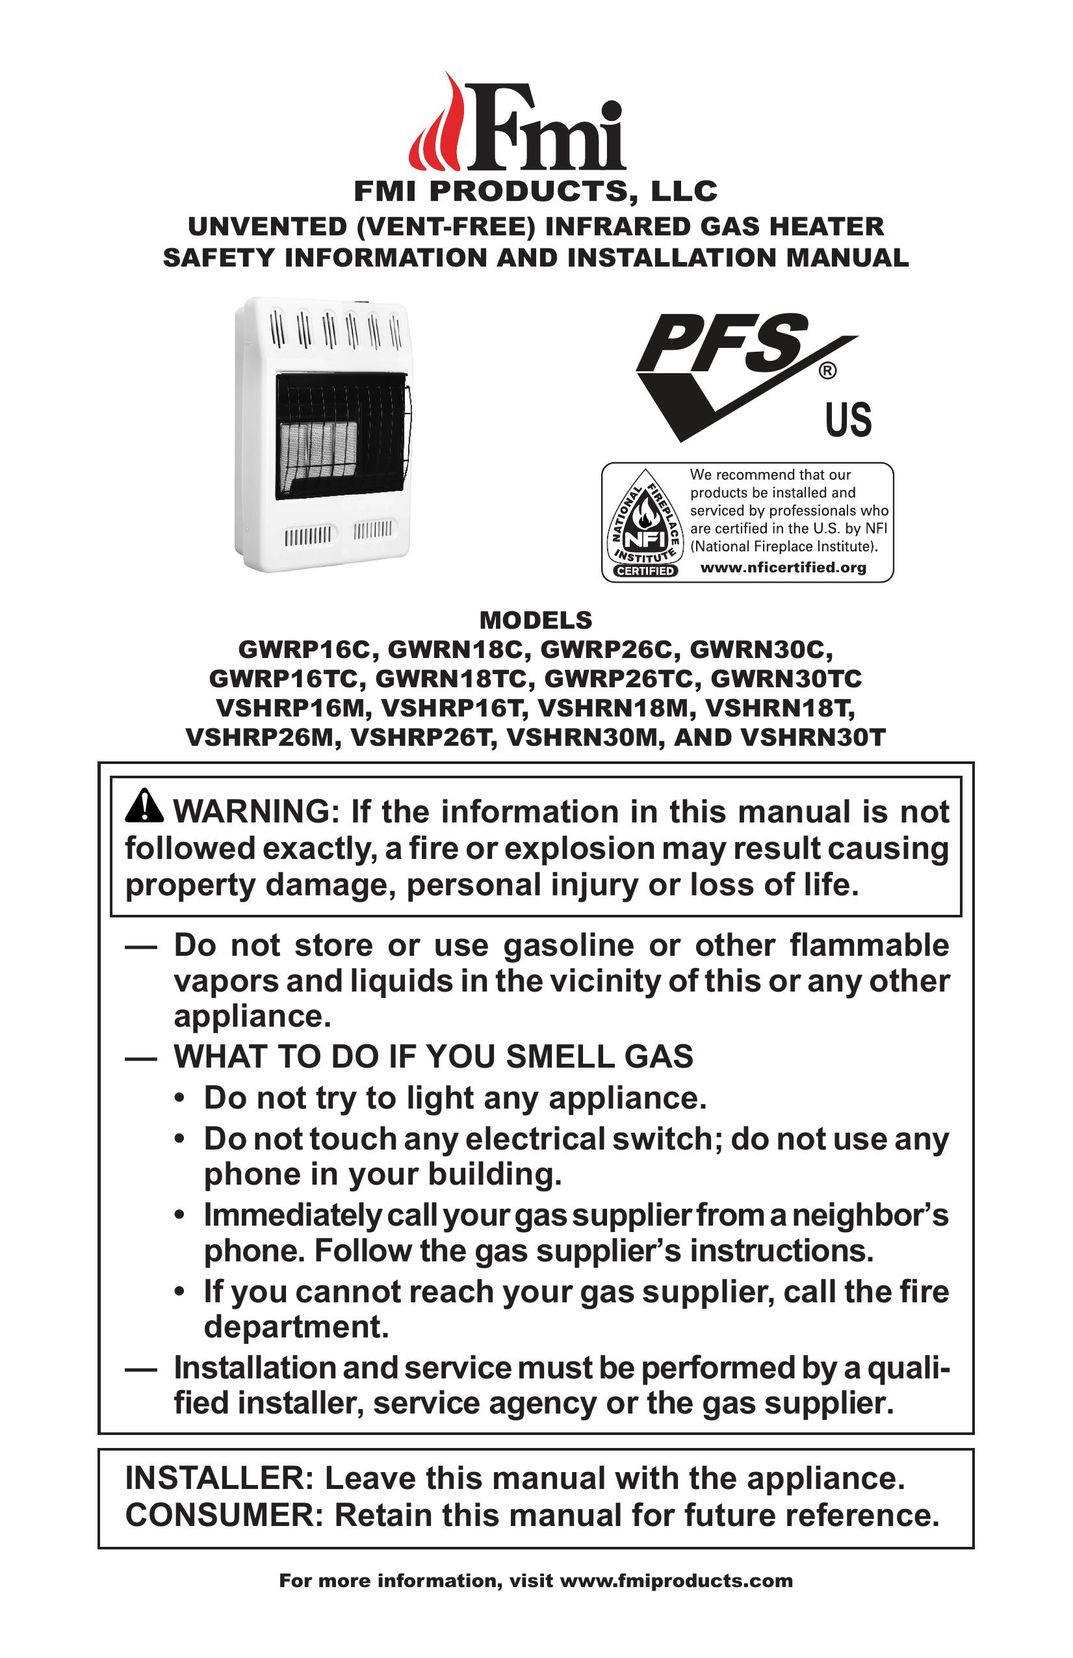 FMI GWRP16C Gas Heater User Manual